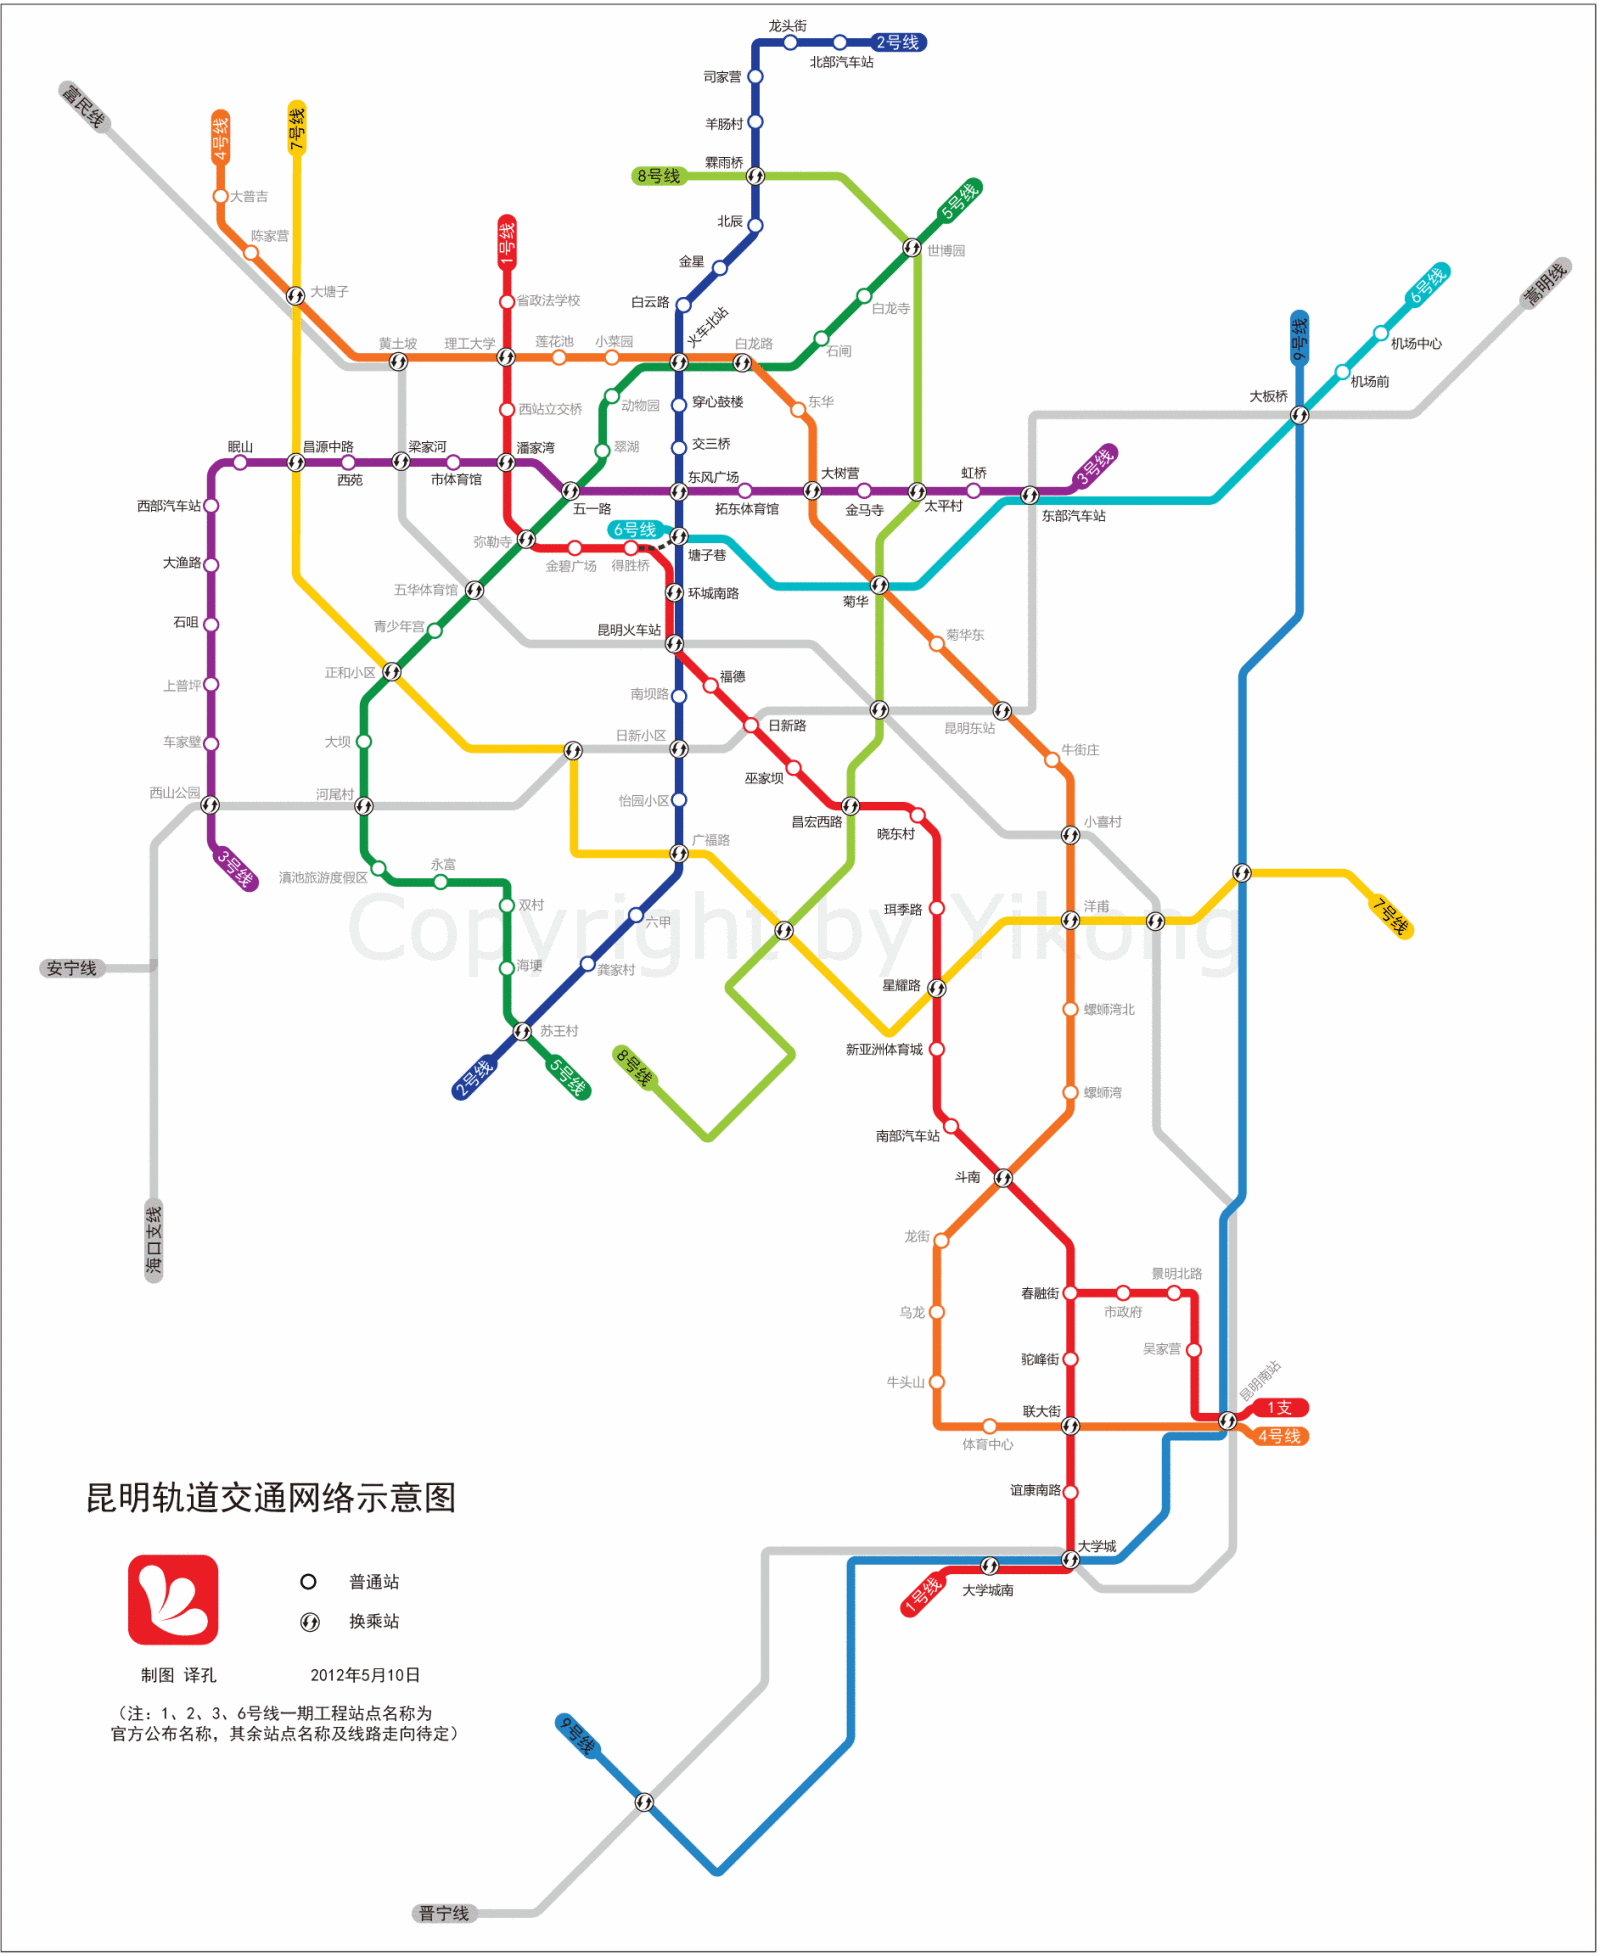 昆明远期规划14条地铁线路,共567公里,车站190座,换乘站42座